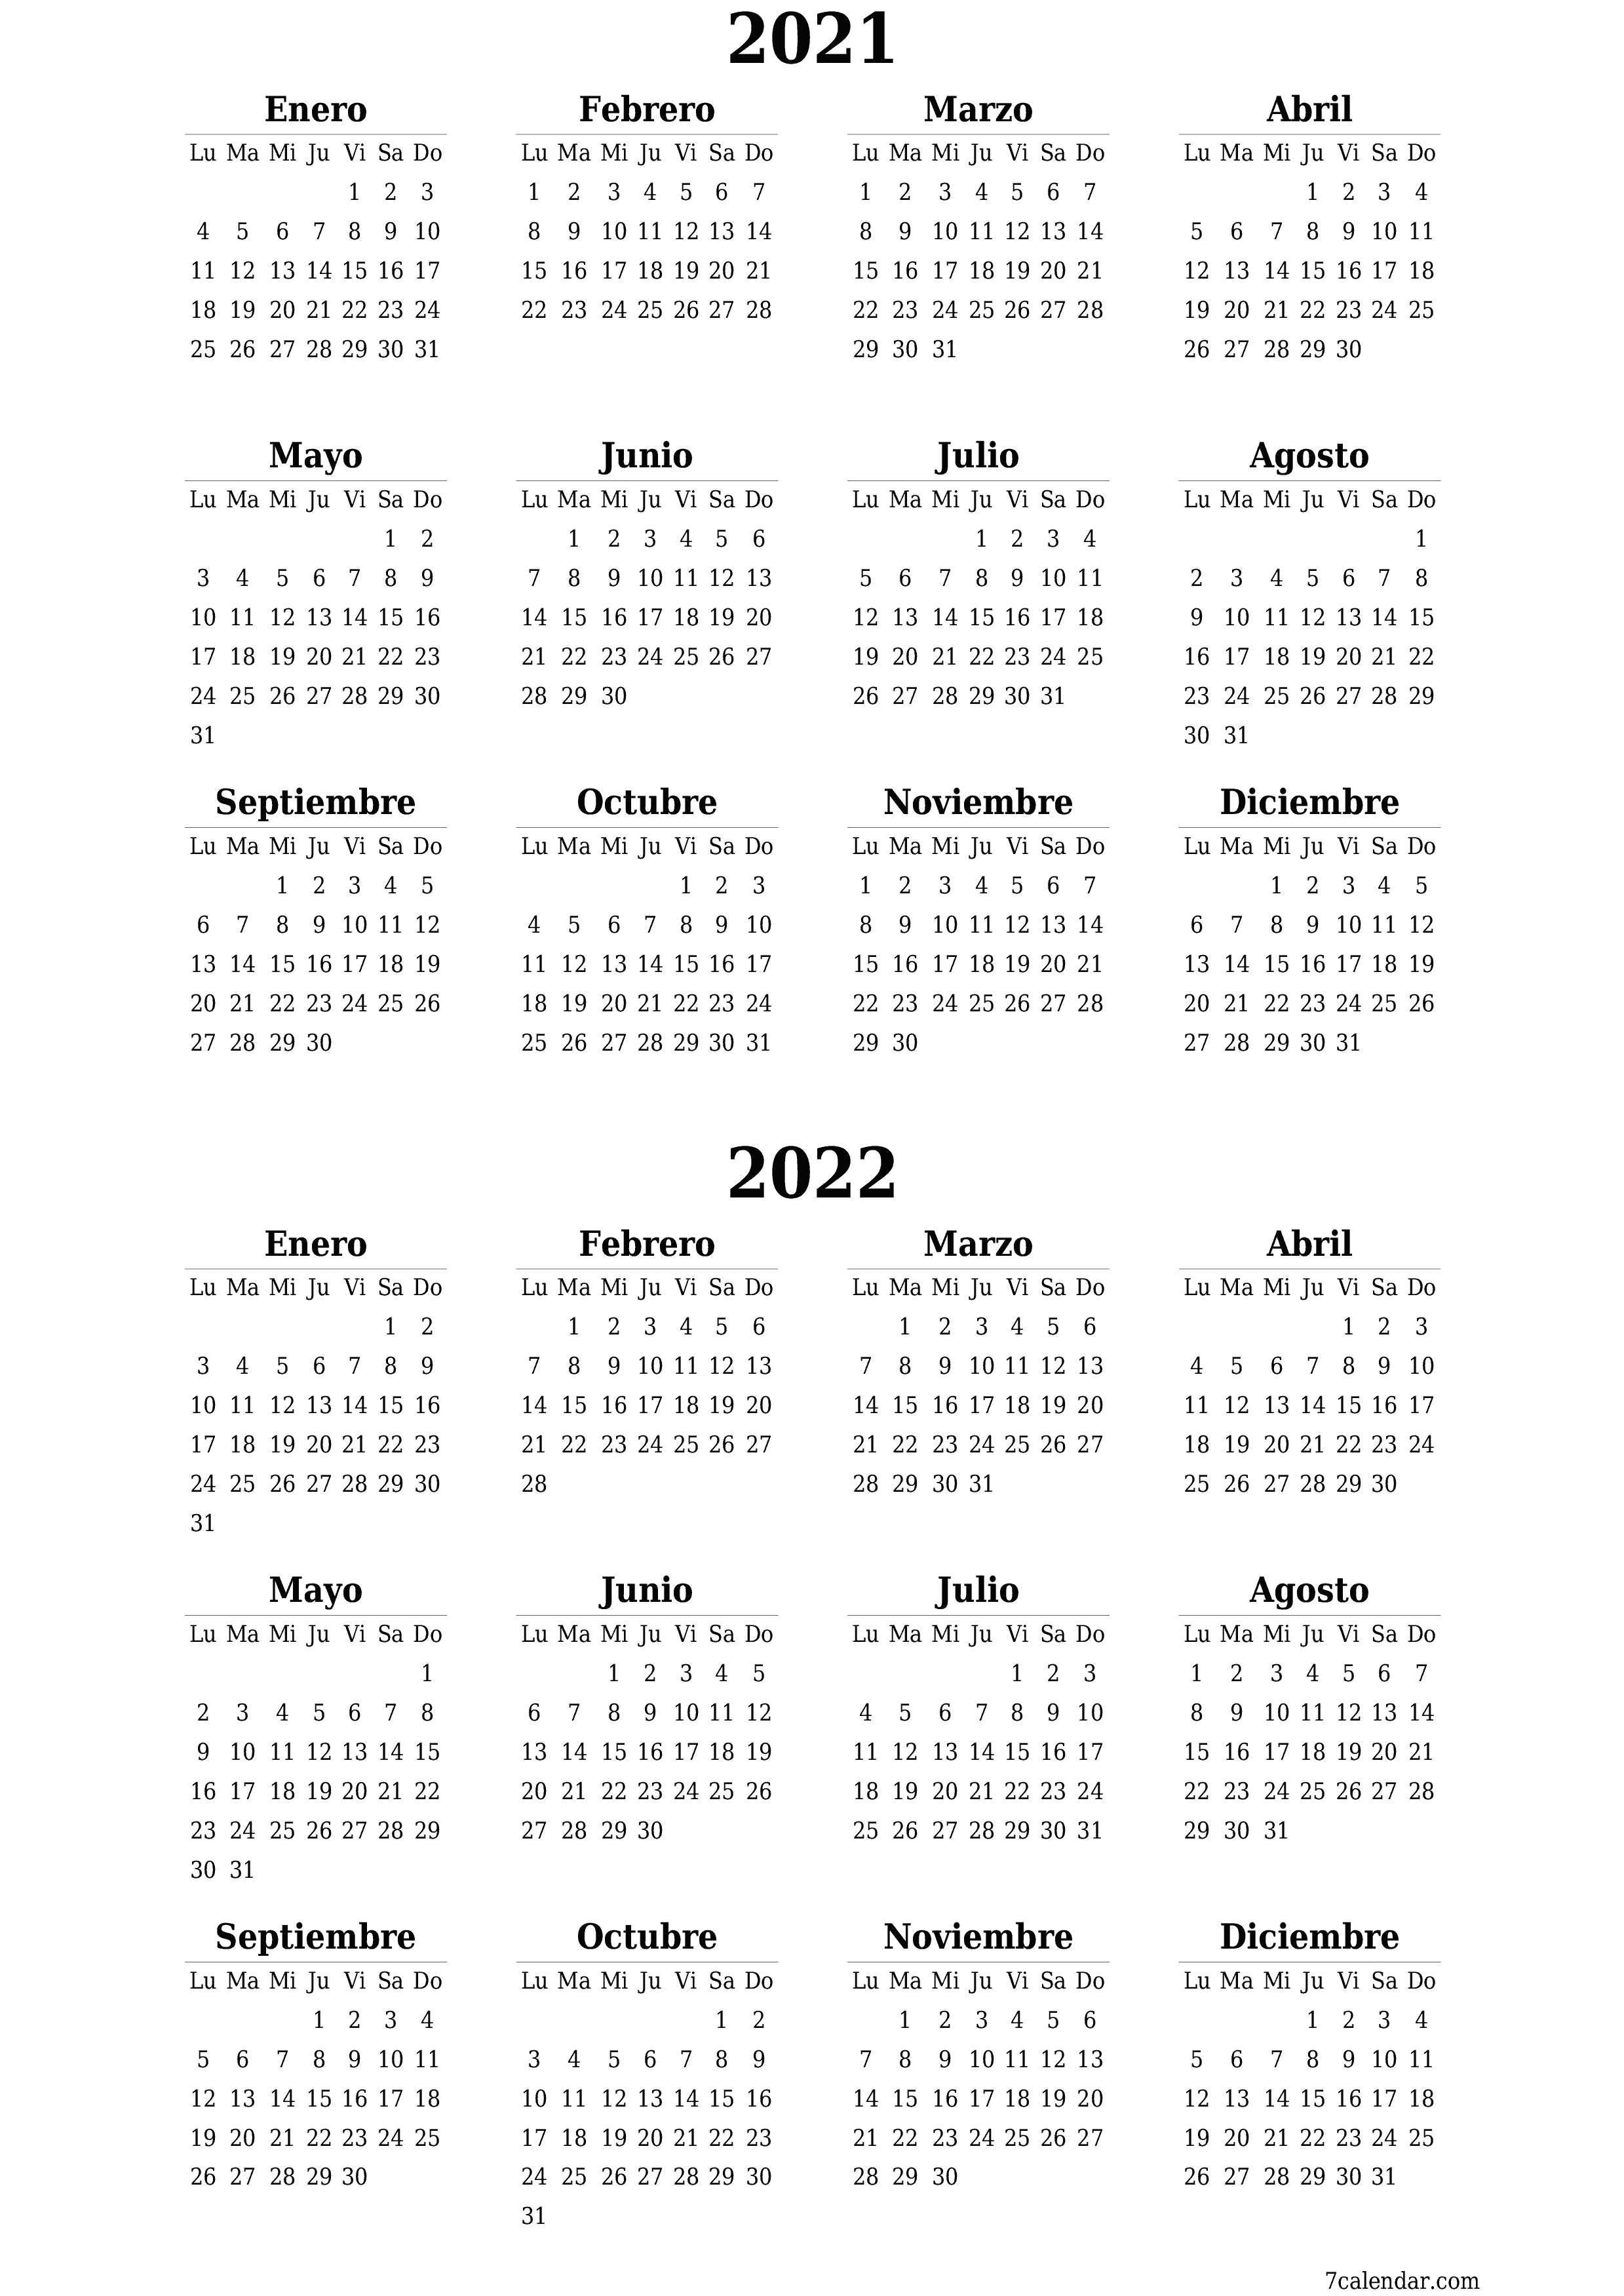  imprimible de pared plantilla de gratisvertical Anual calendario Marzo (Mar) 2021